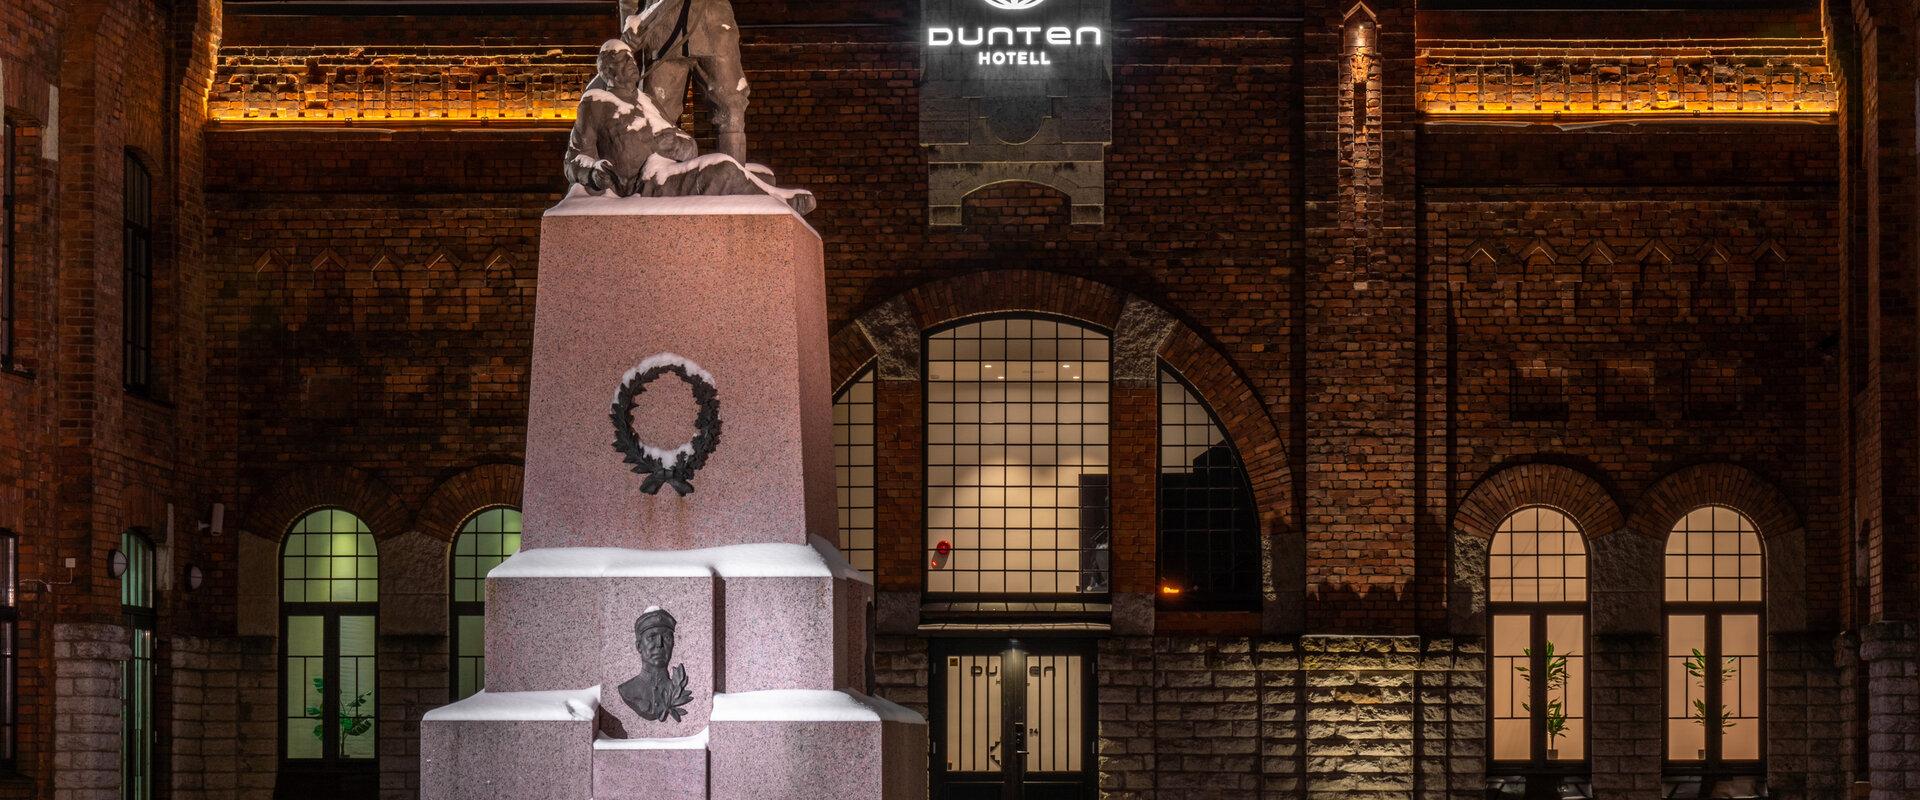 Dunten Hotel, āra fasāde kopā ar monumentu